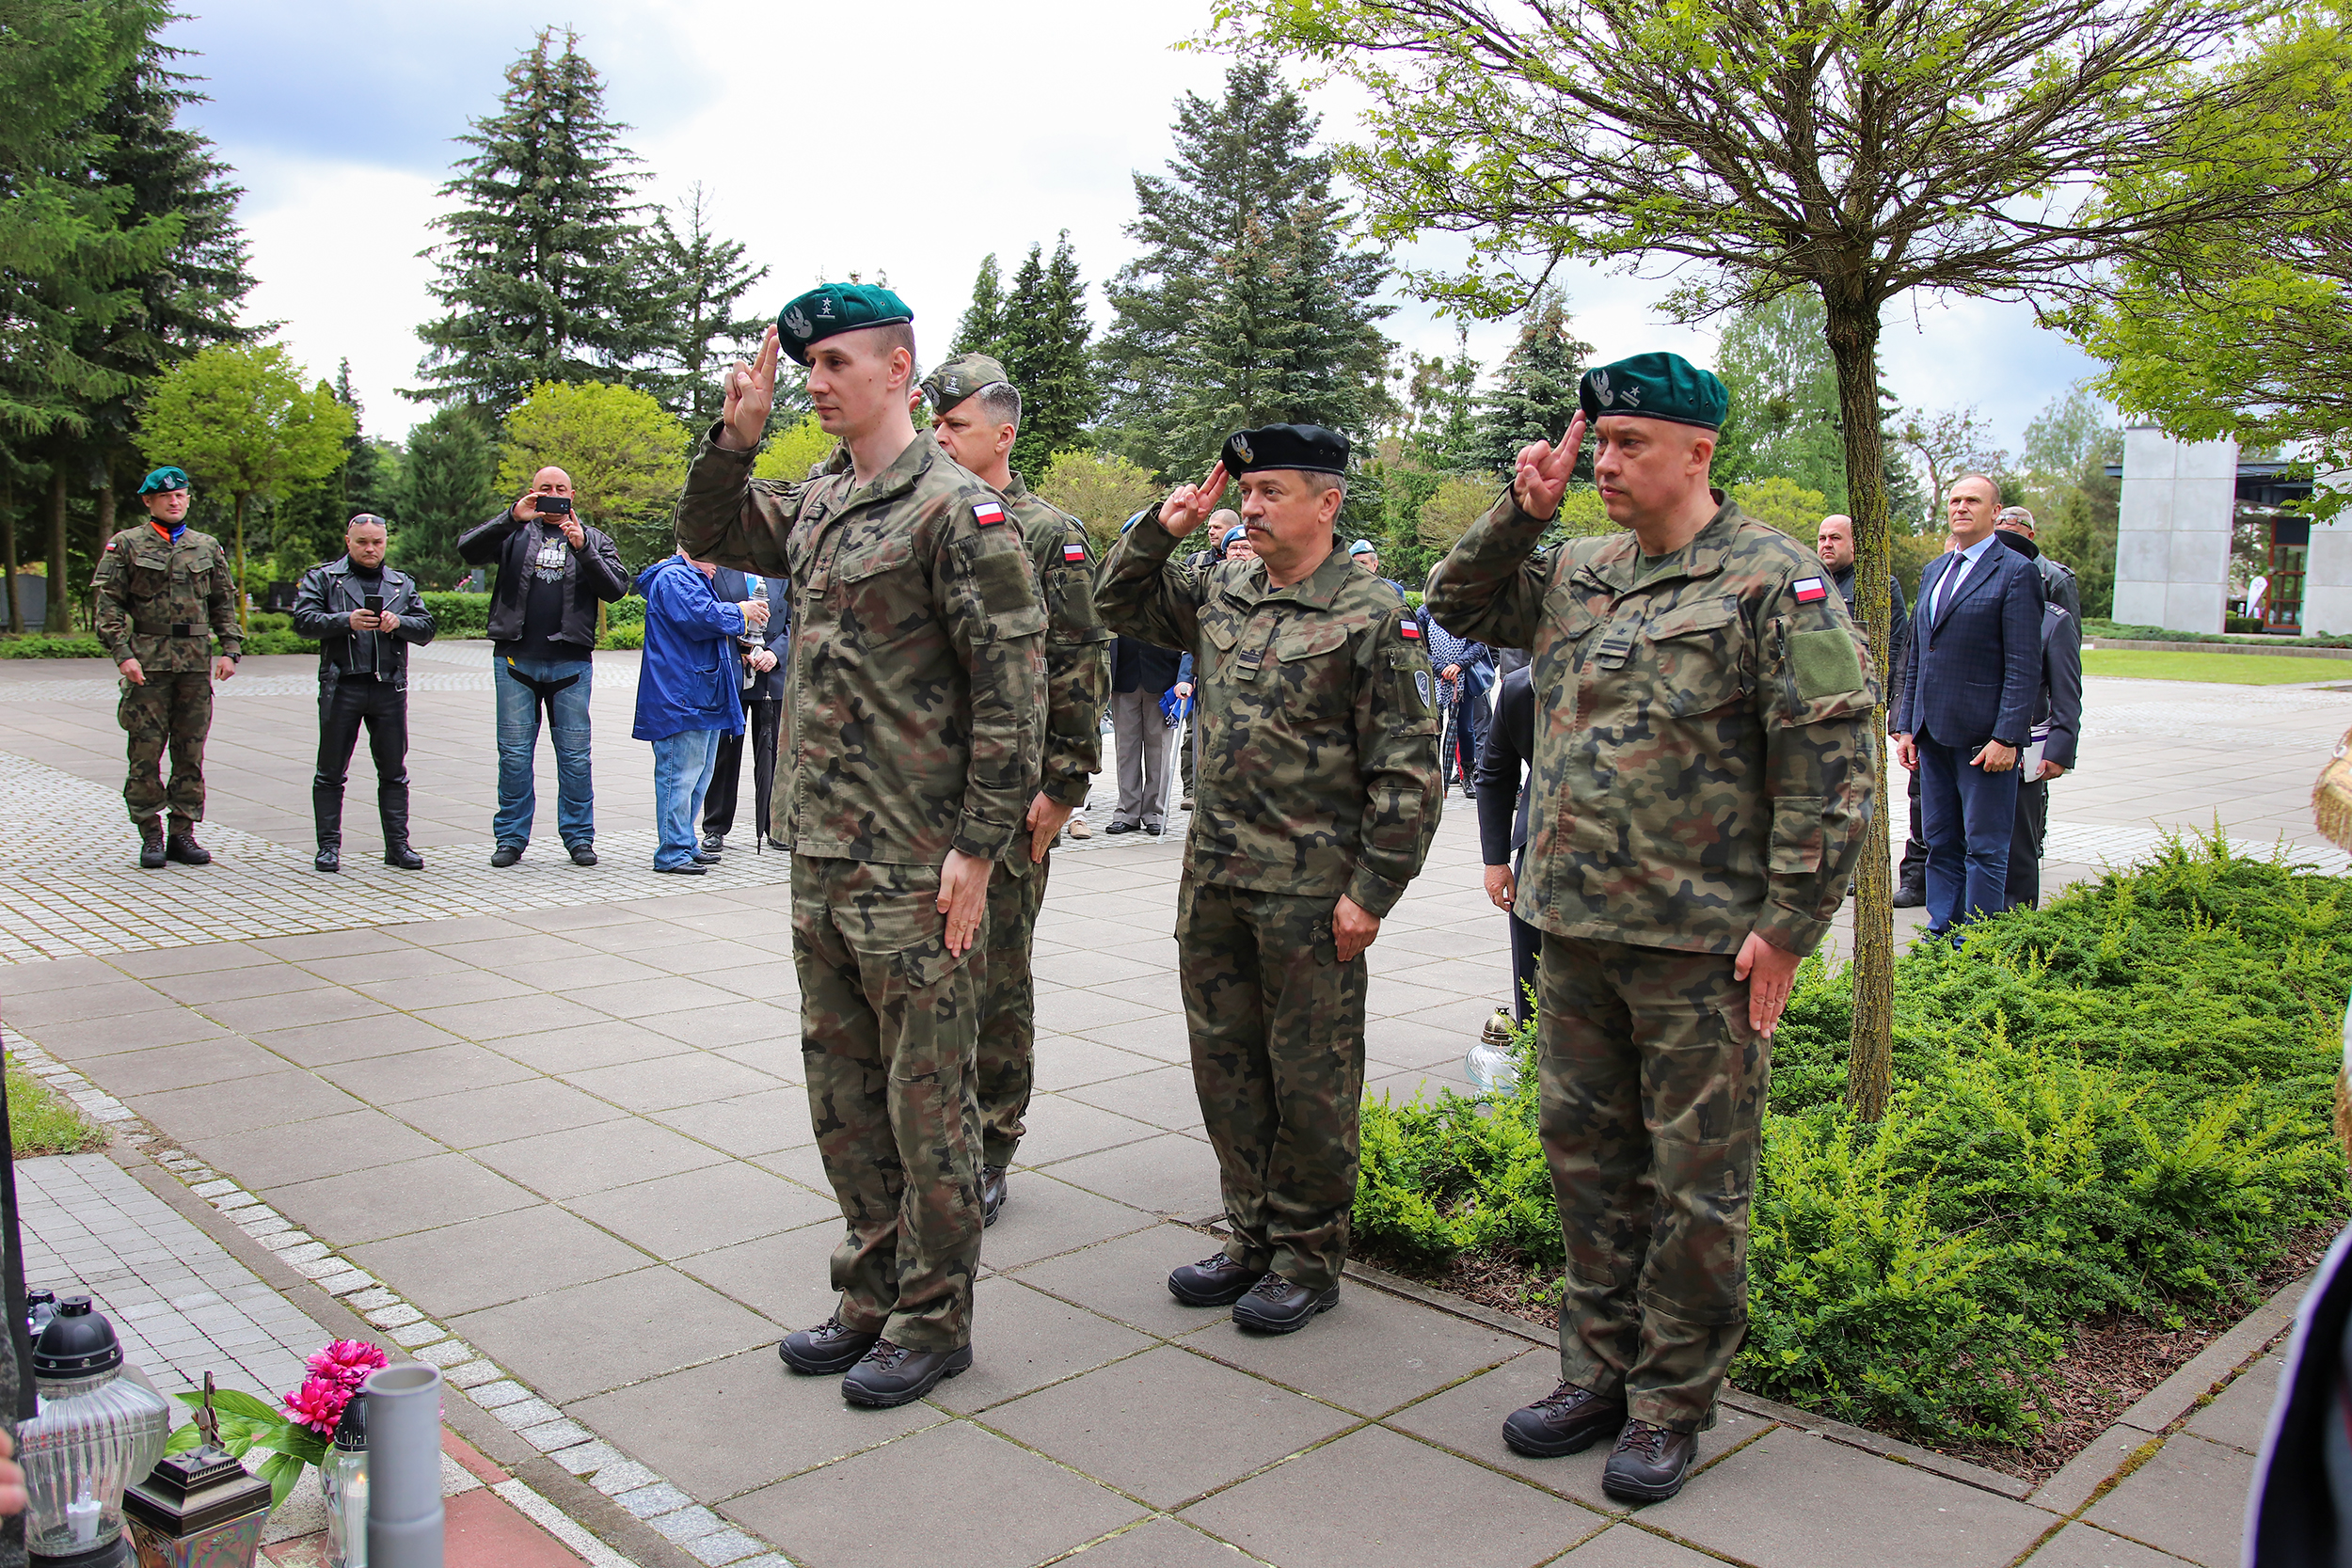 żołnierze salutują przed pomnikiem, ludzie w tle robią zdjęcia